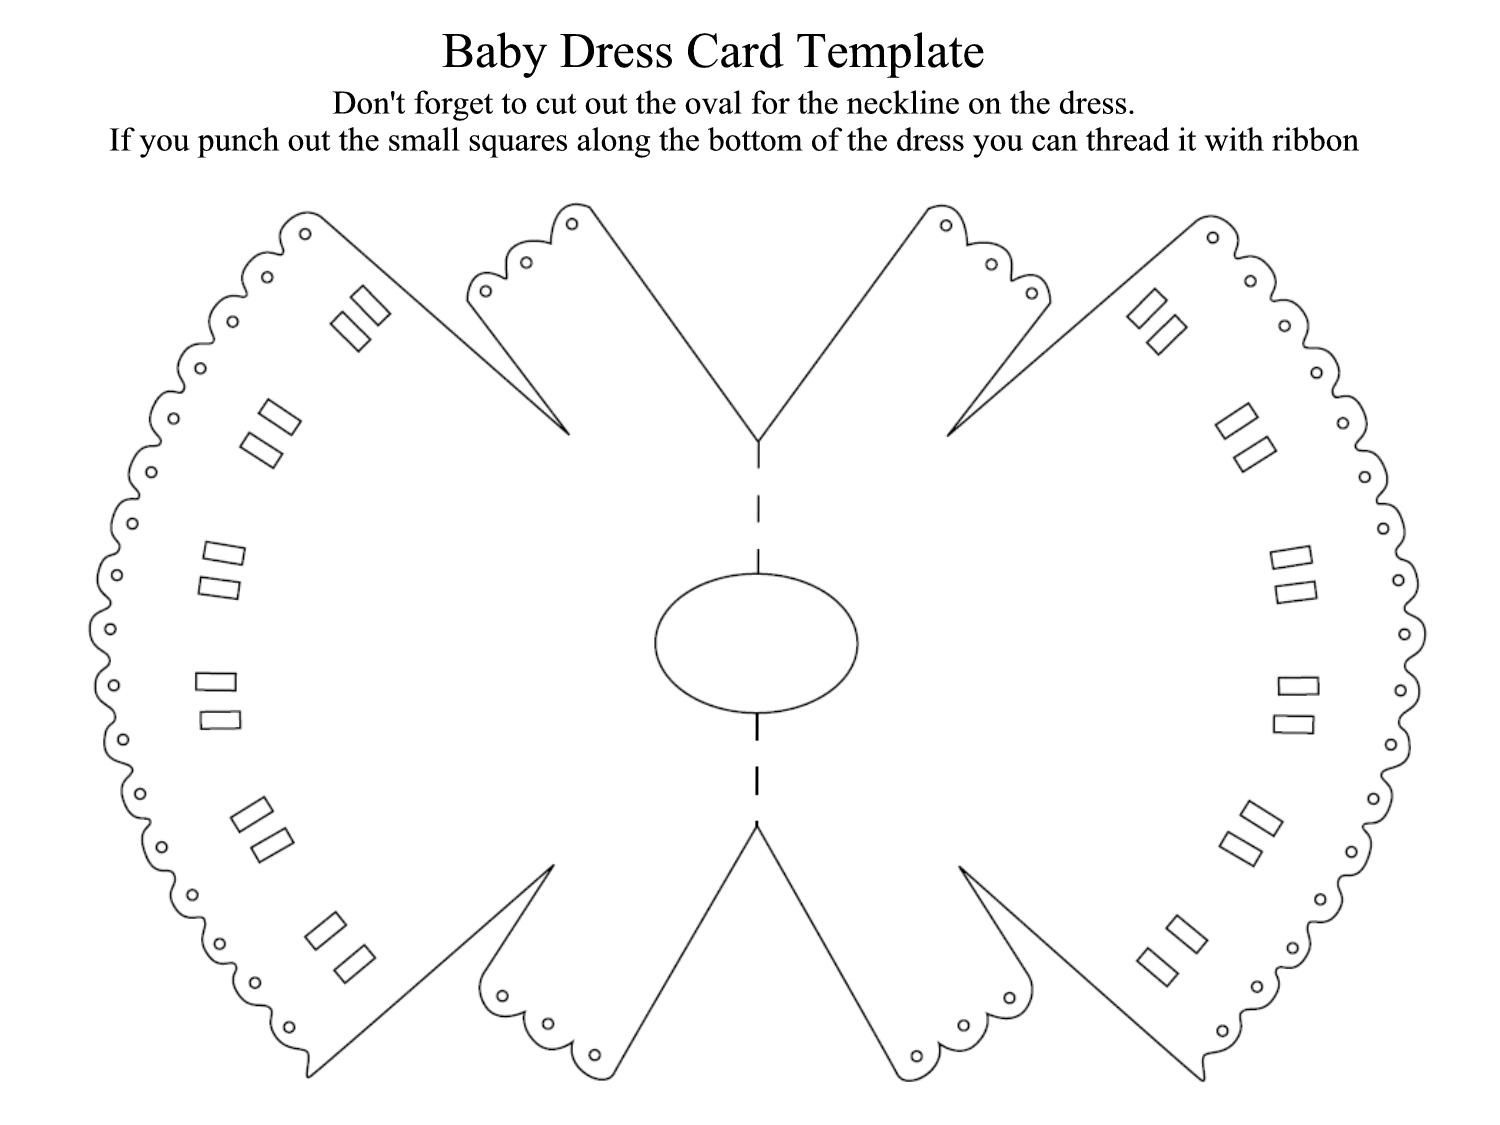 Free Printable Baby Sewing Patterns | Free Patterns For Sewing Baby - Free Printable Baby Onesie Template